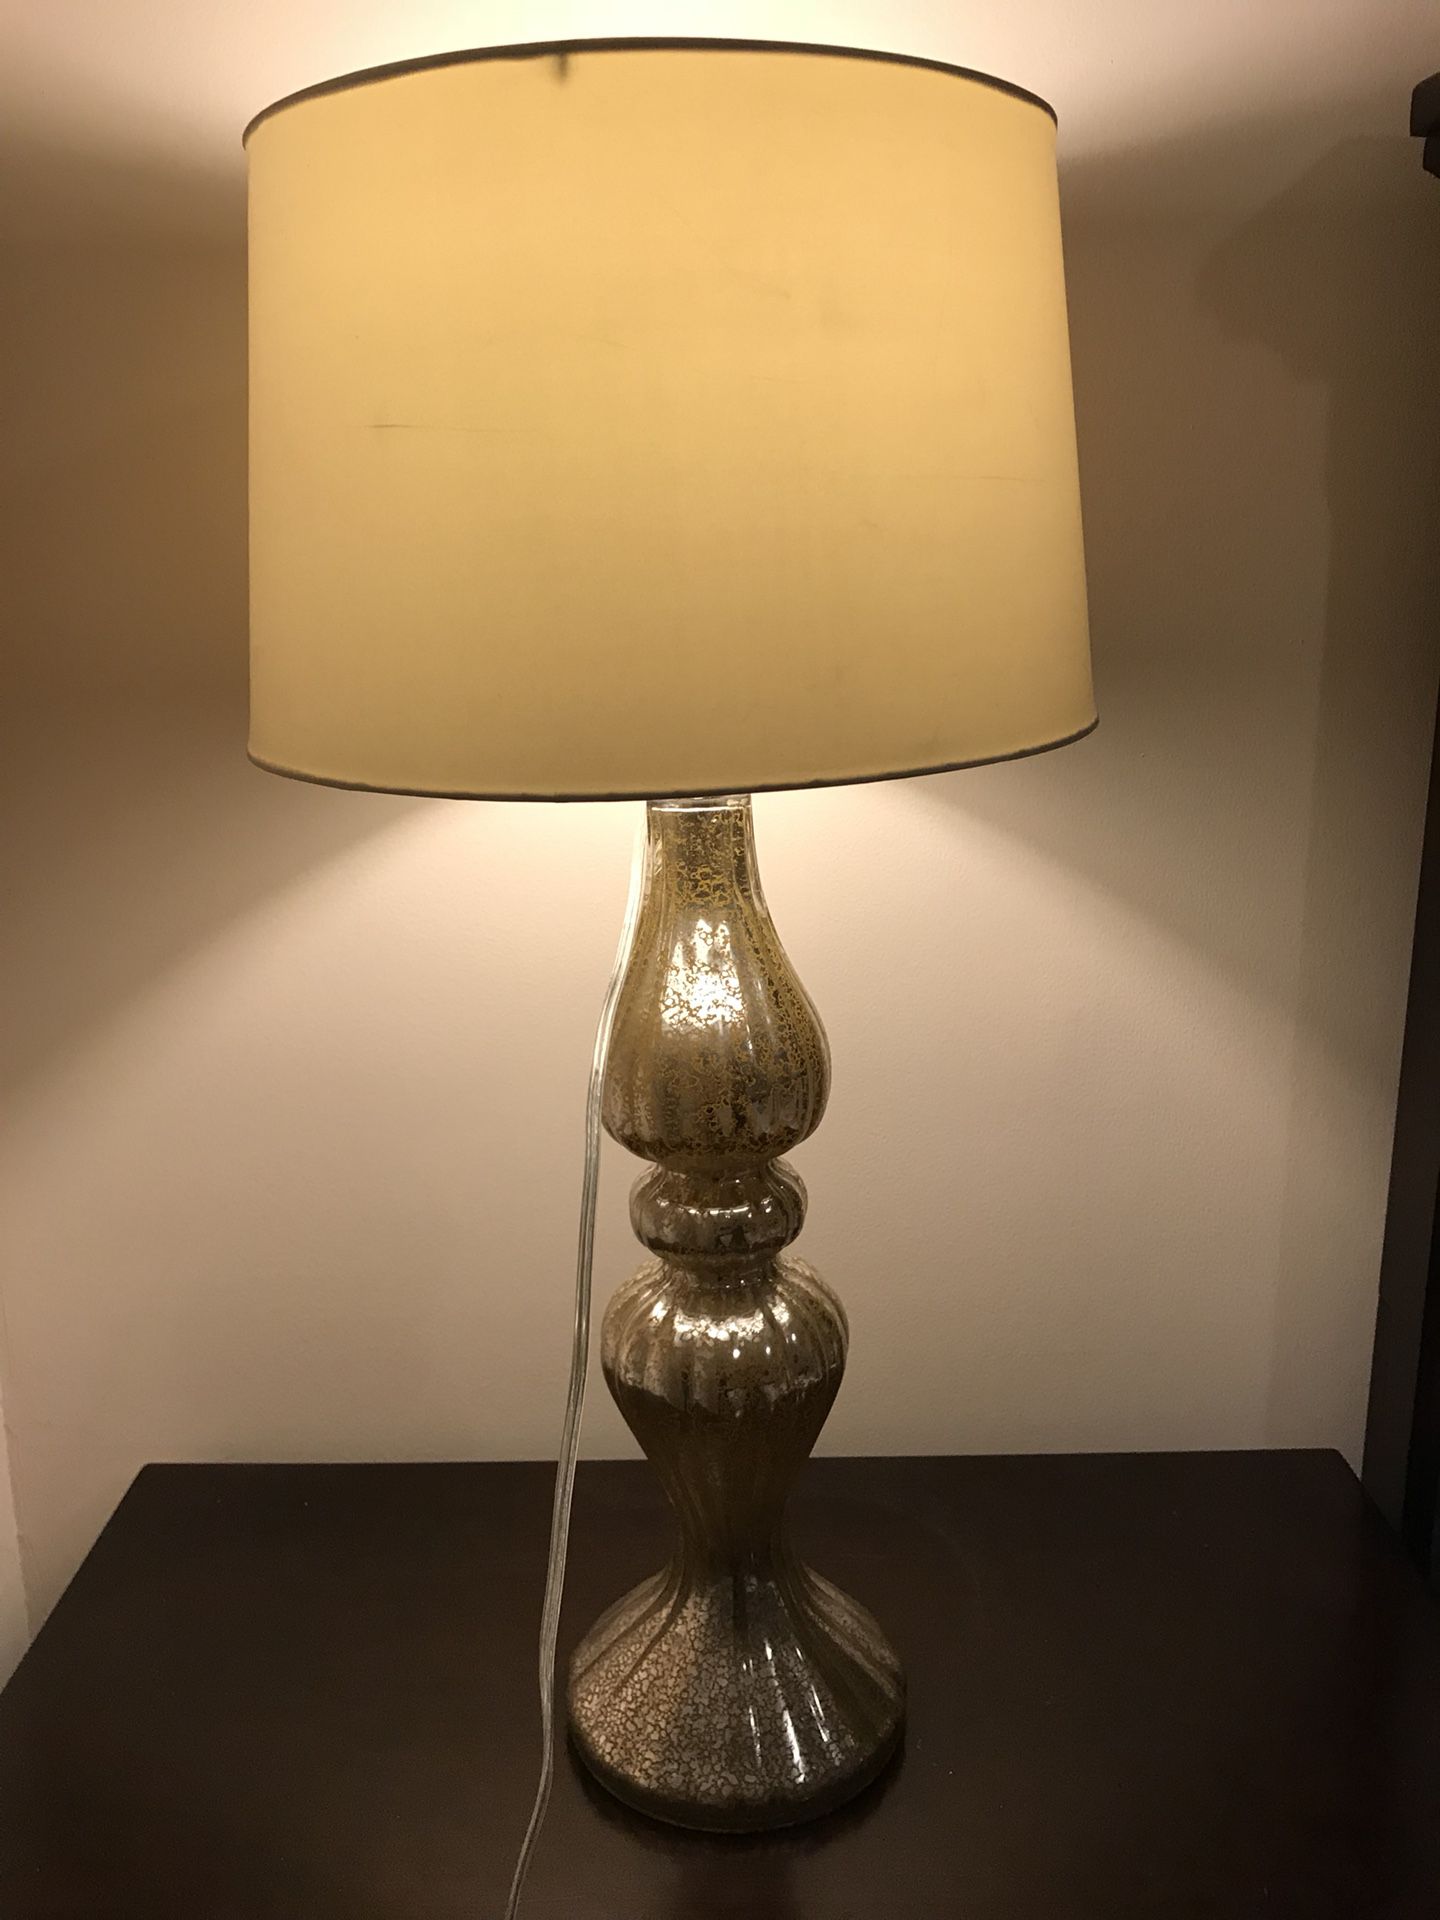 Tabletop lamp